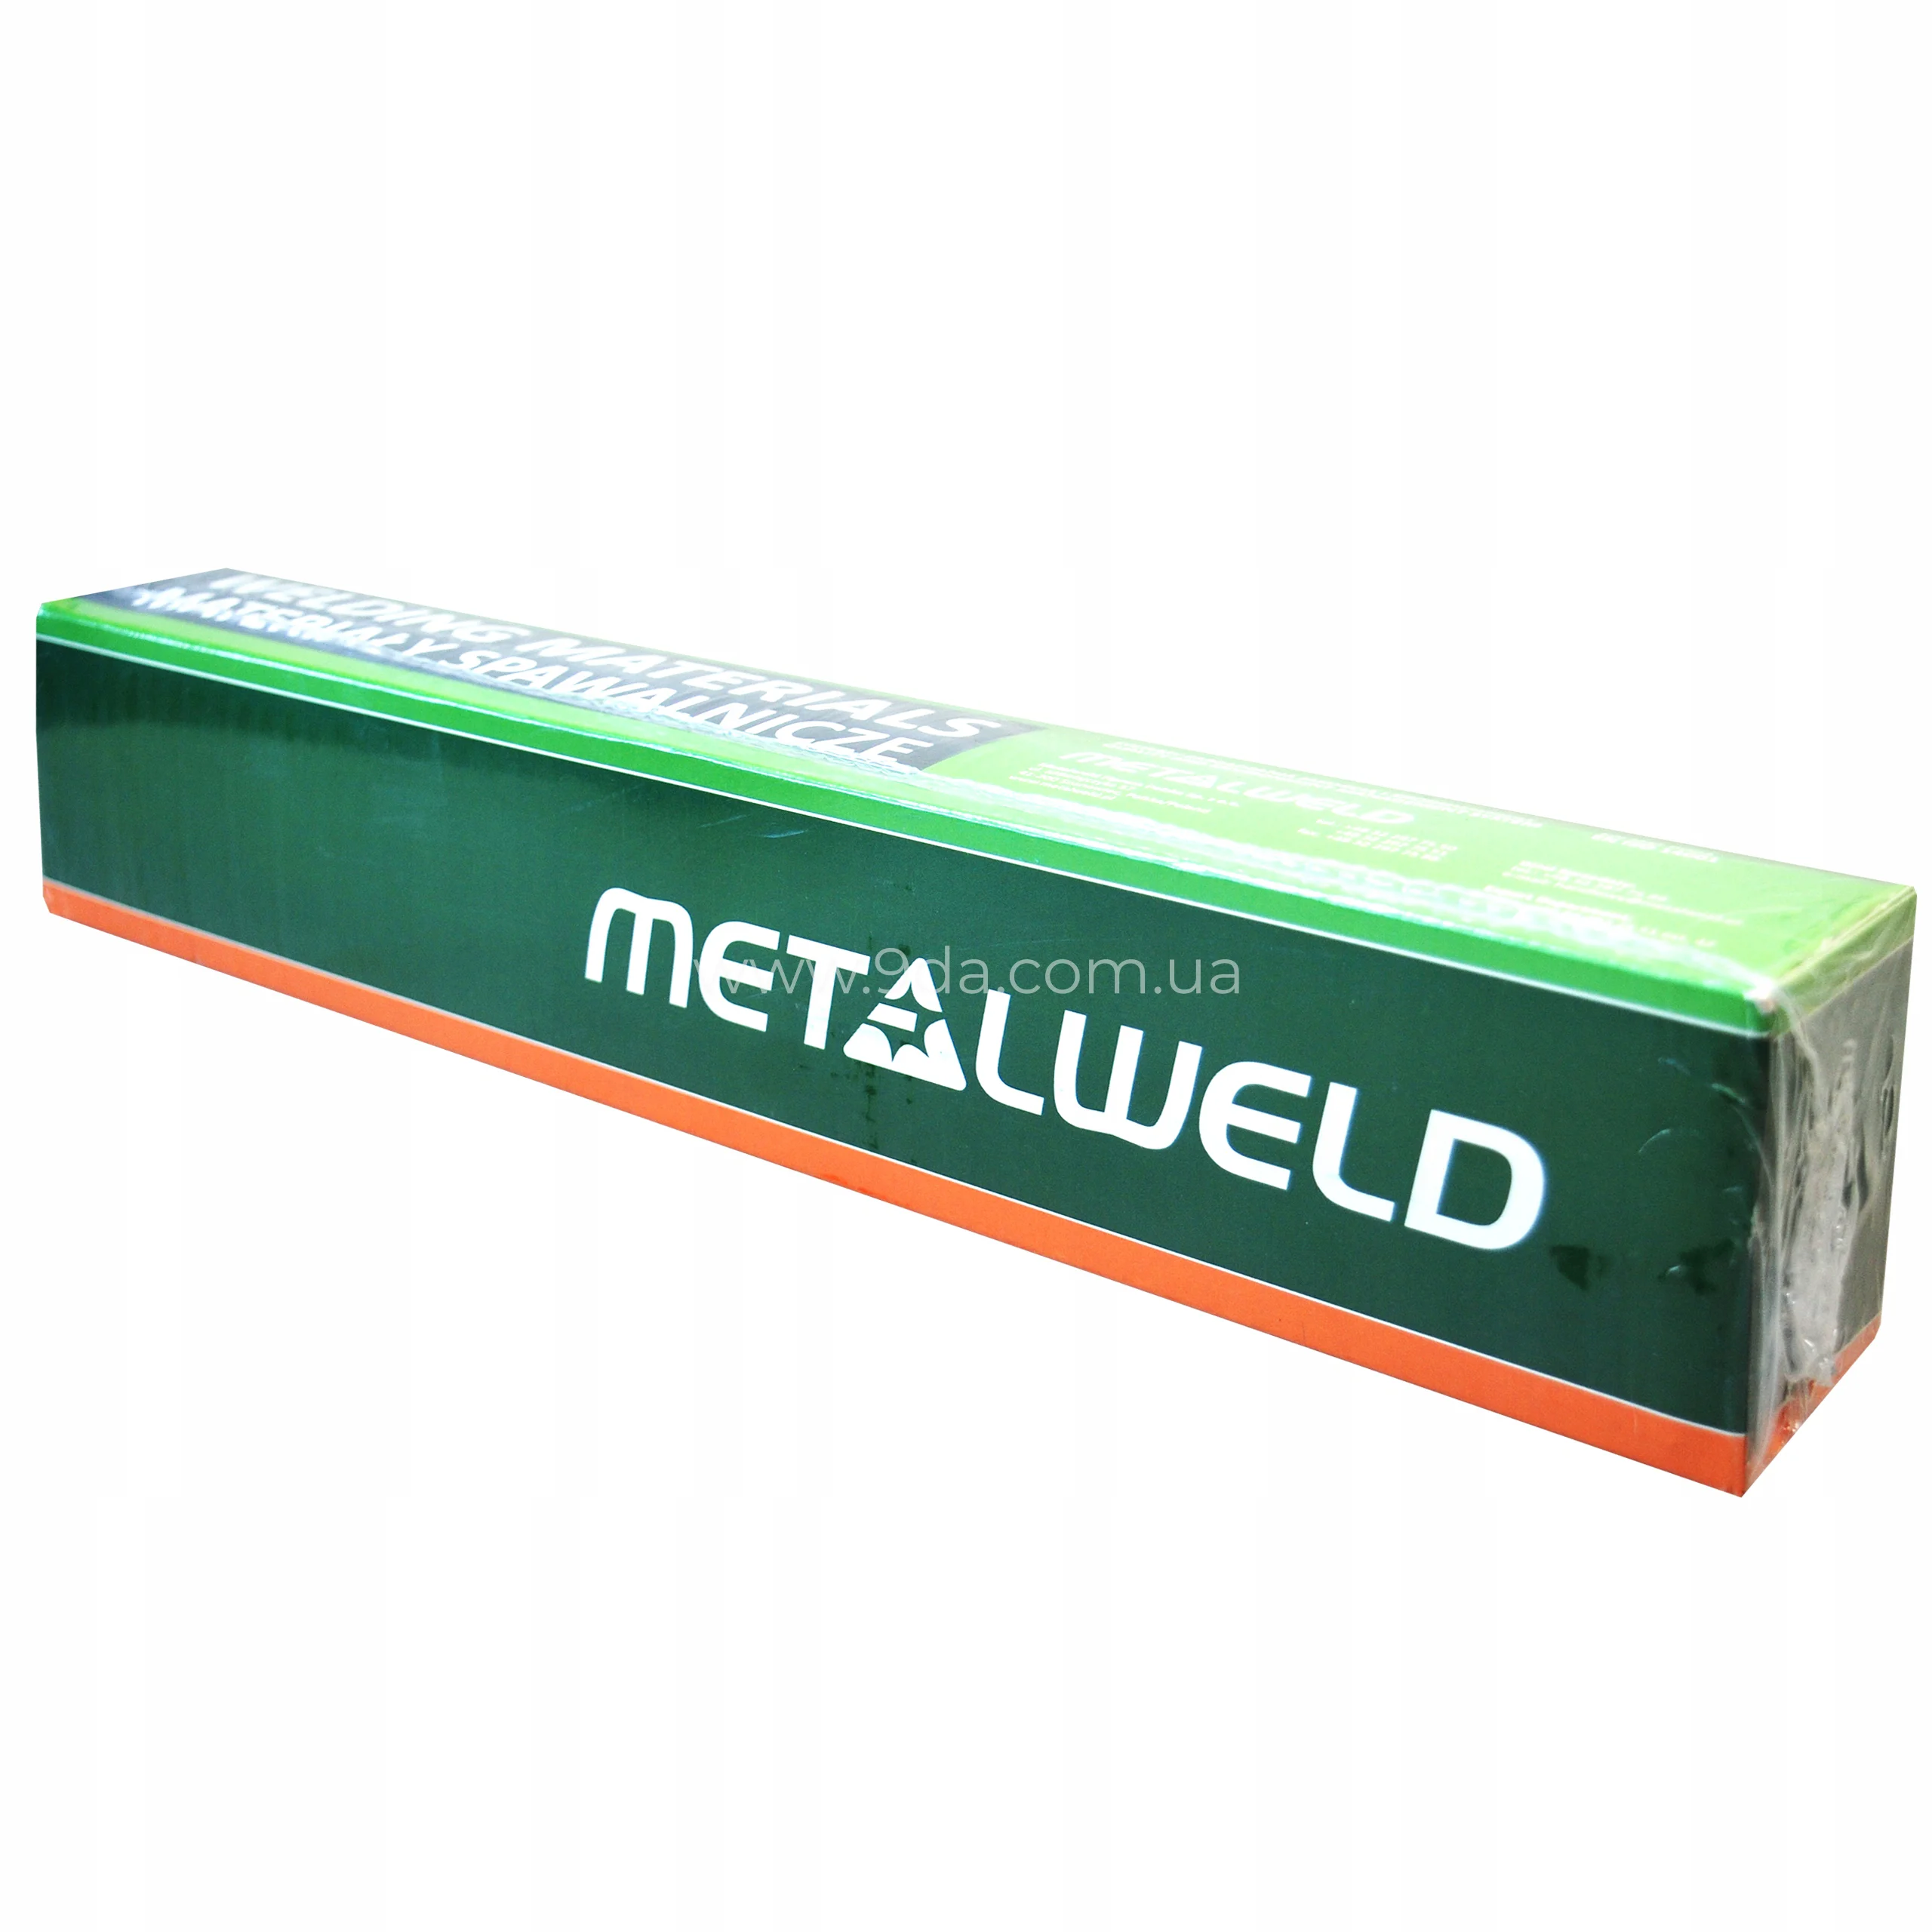 Електроди зварювальні Metalweld Rutweld 12 ф3,2x350мм, E 6013, E38 0 RC 11, 90-140А, (упаковка 5,0 кг.) - 4